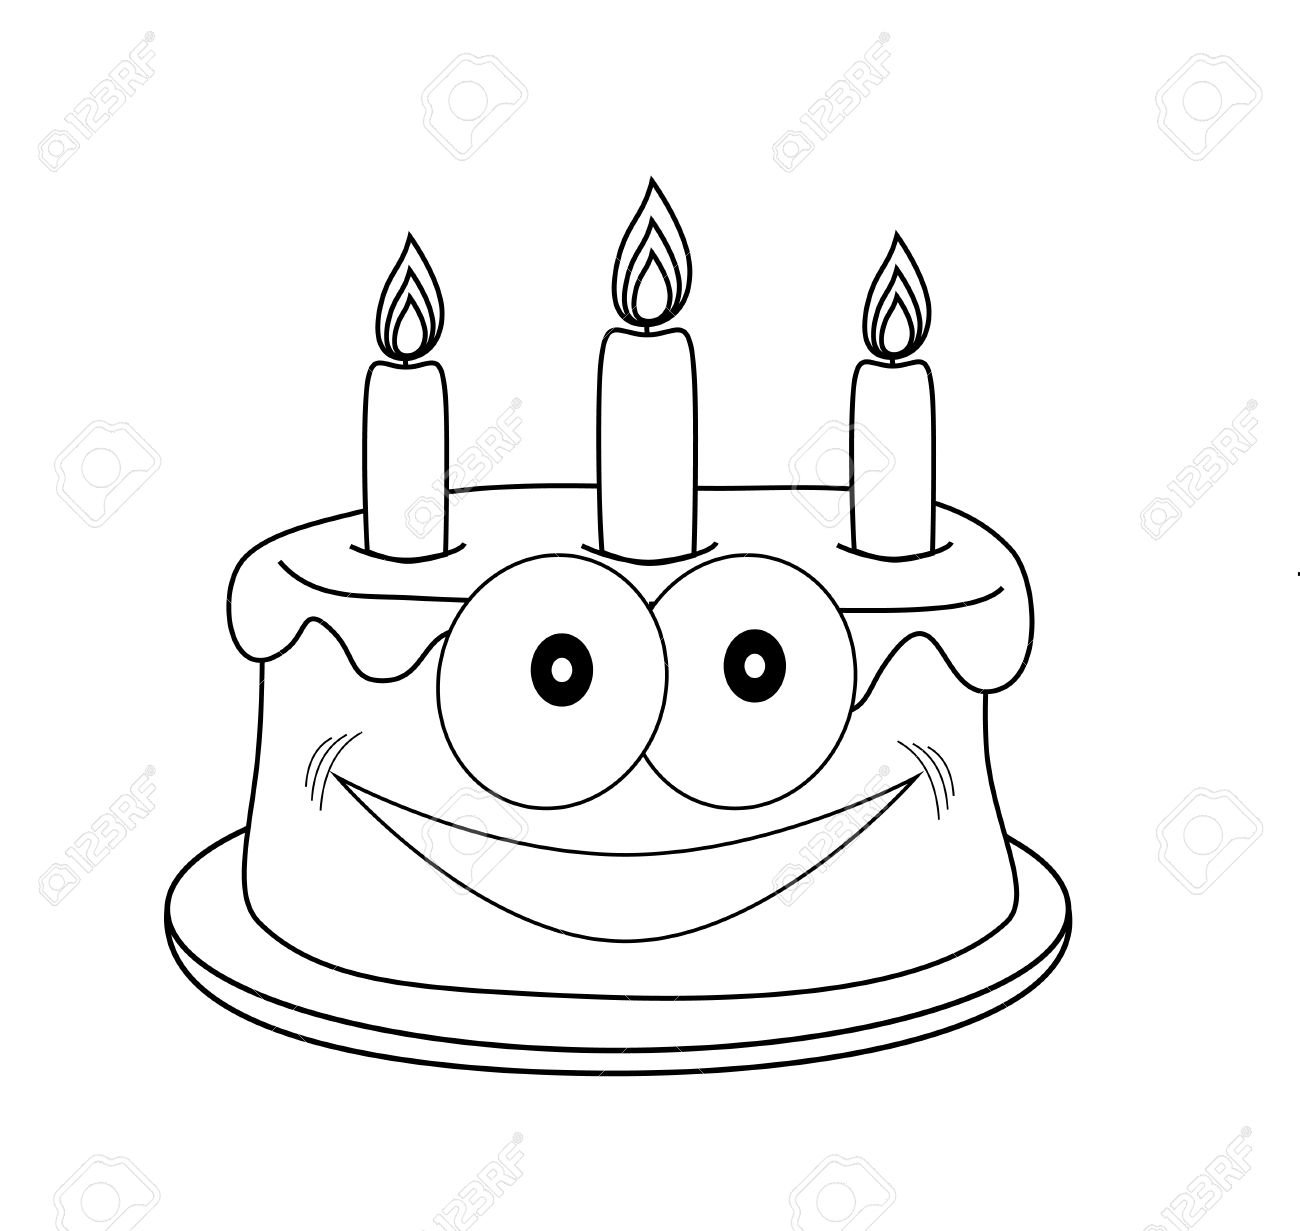 Лёгкий рисунок торта со свечками